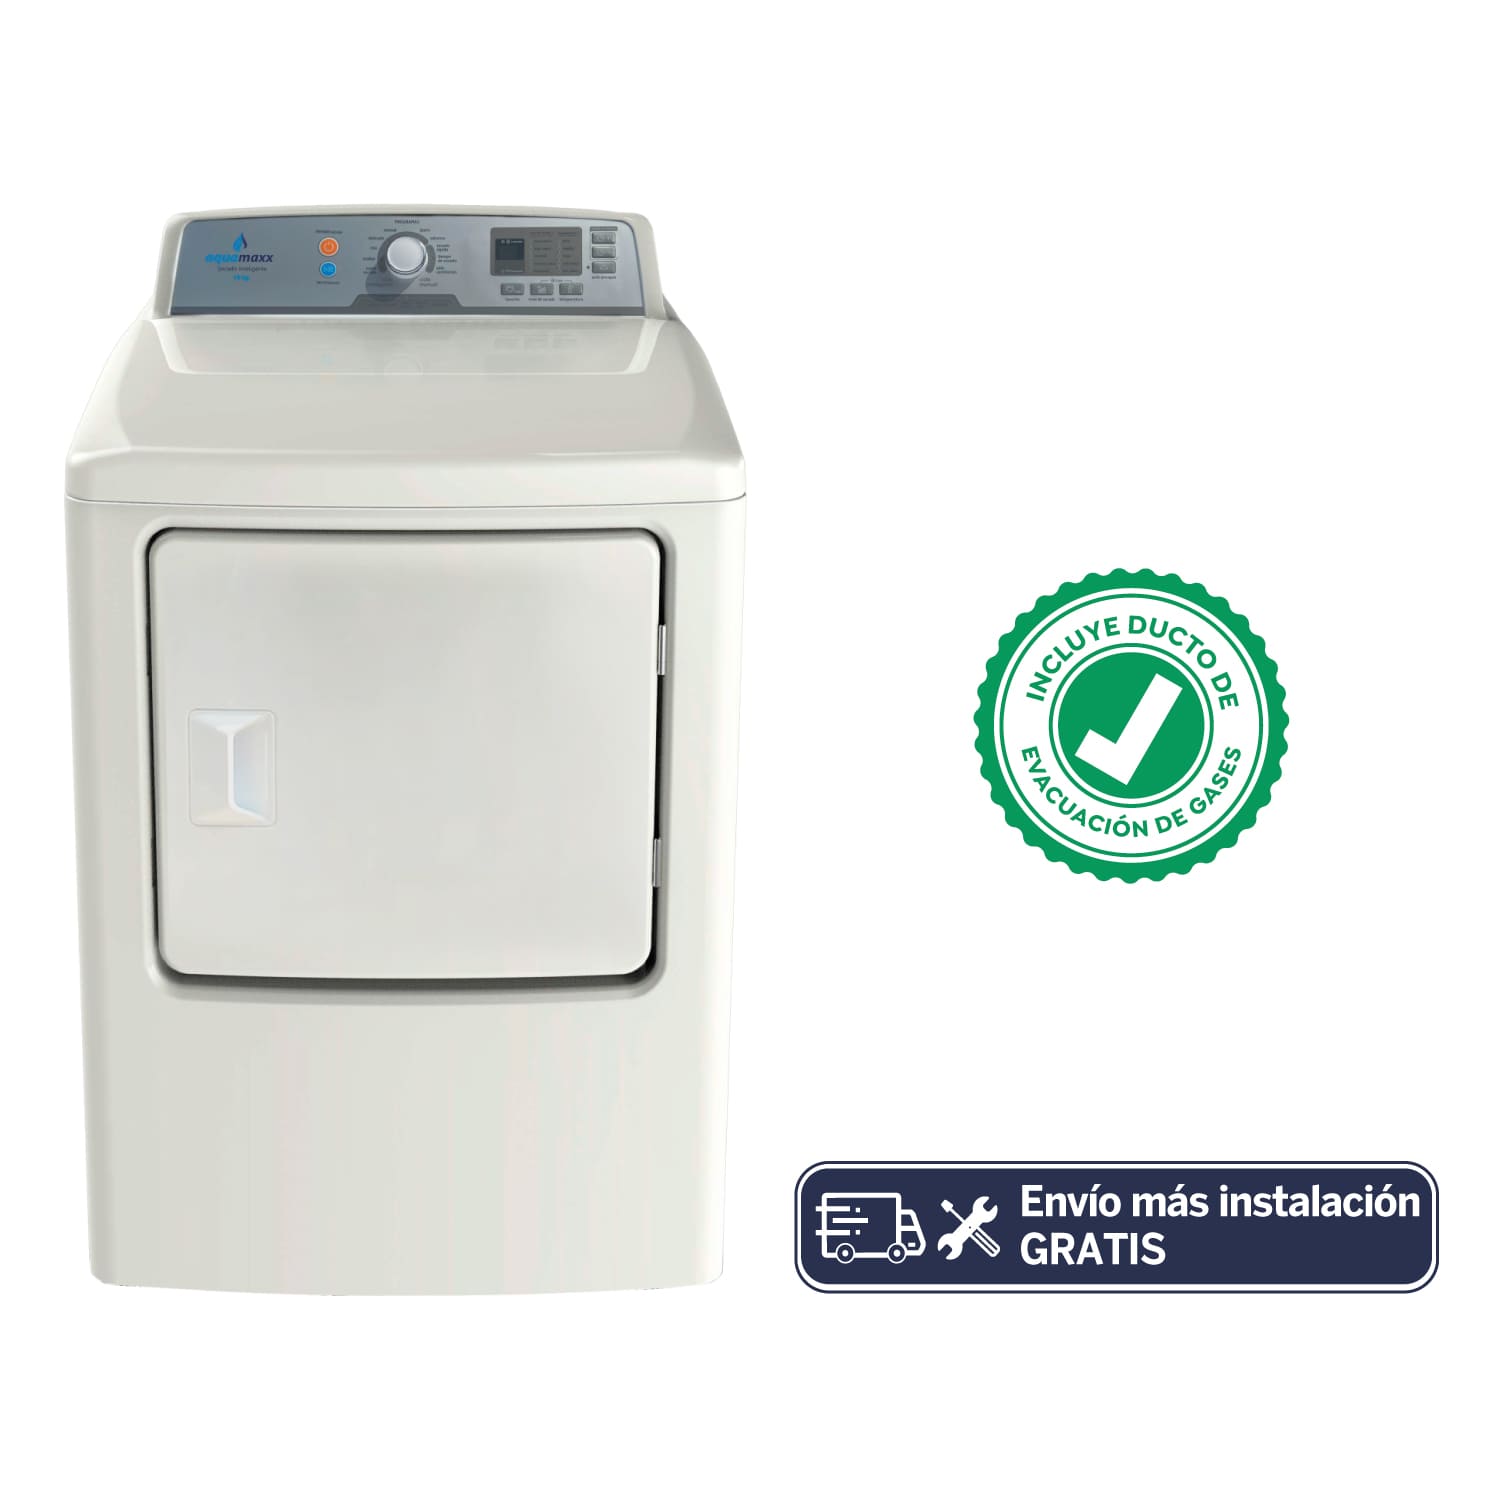 Aquamaxx - Si de secado se trata, cuida toda tu ropa con nuestra Secadora a  Gas Aquamaxx de 10Kg Modelo Rinnai, única en el mercado que se puede  colgar. Además, es la